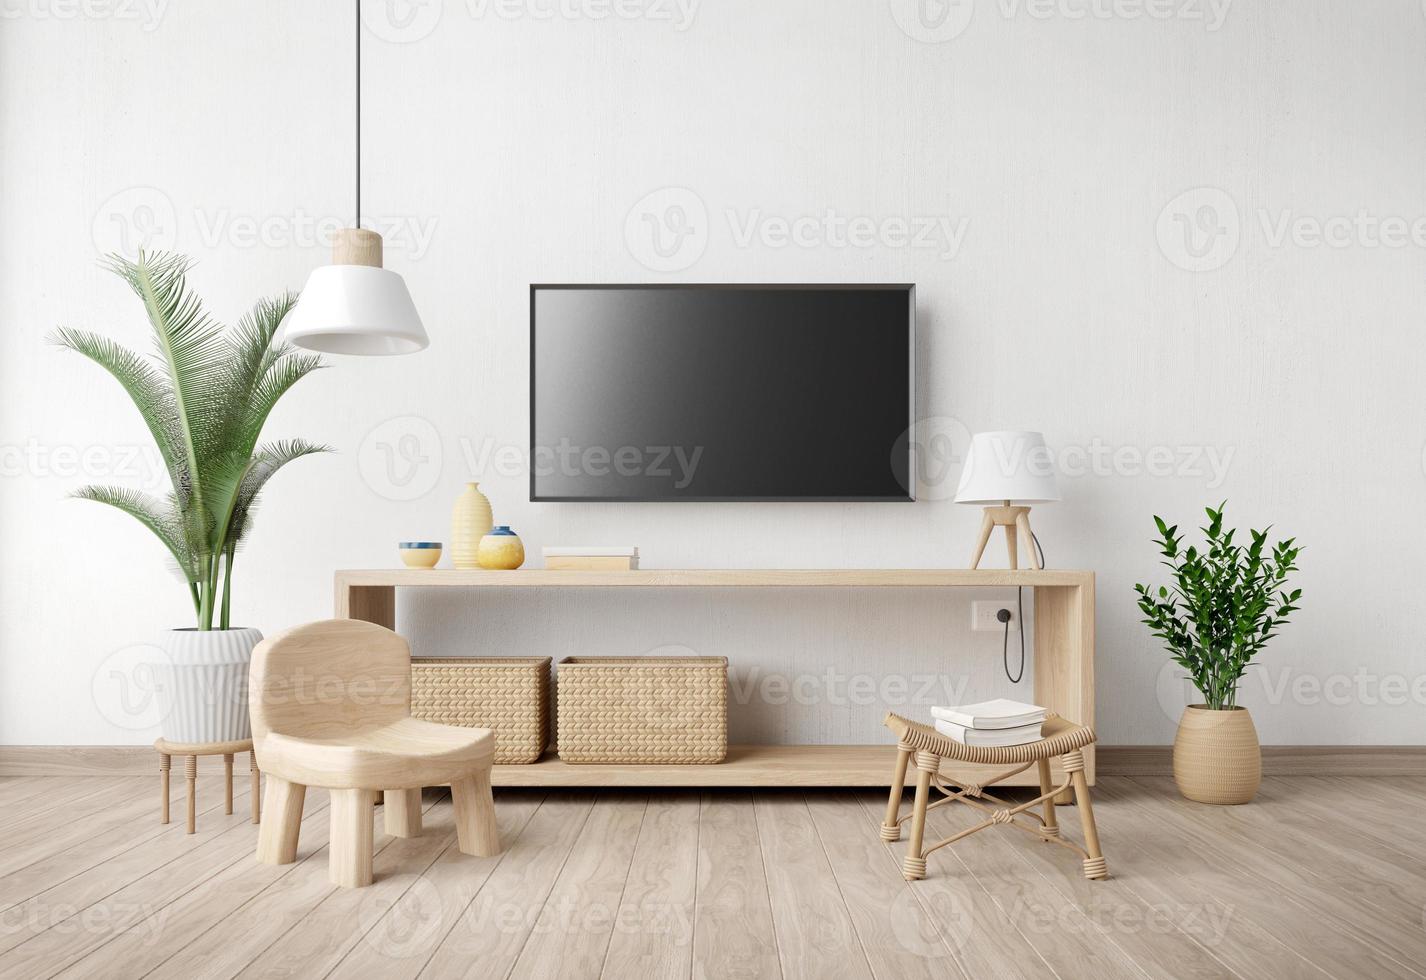 interior da sala de estar com suporte de tv, cadeira, lâmpada, vaso e planta no fundo da parede branca. estilo mínimo. renderização em 3d foto